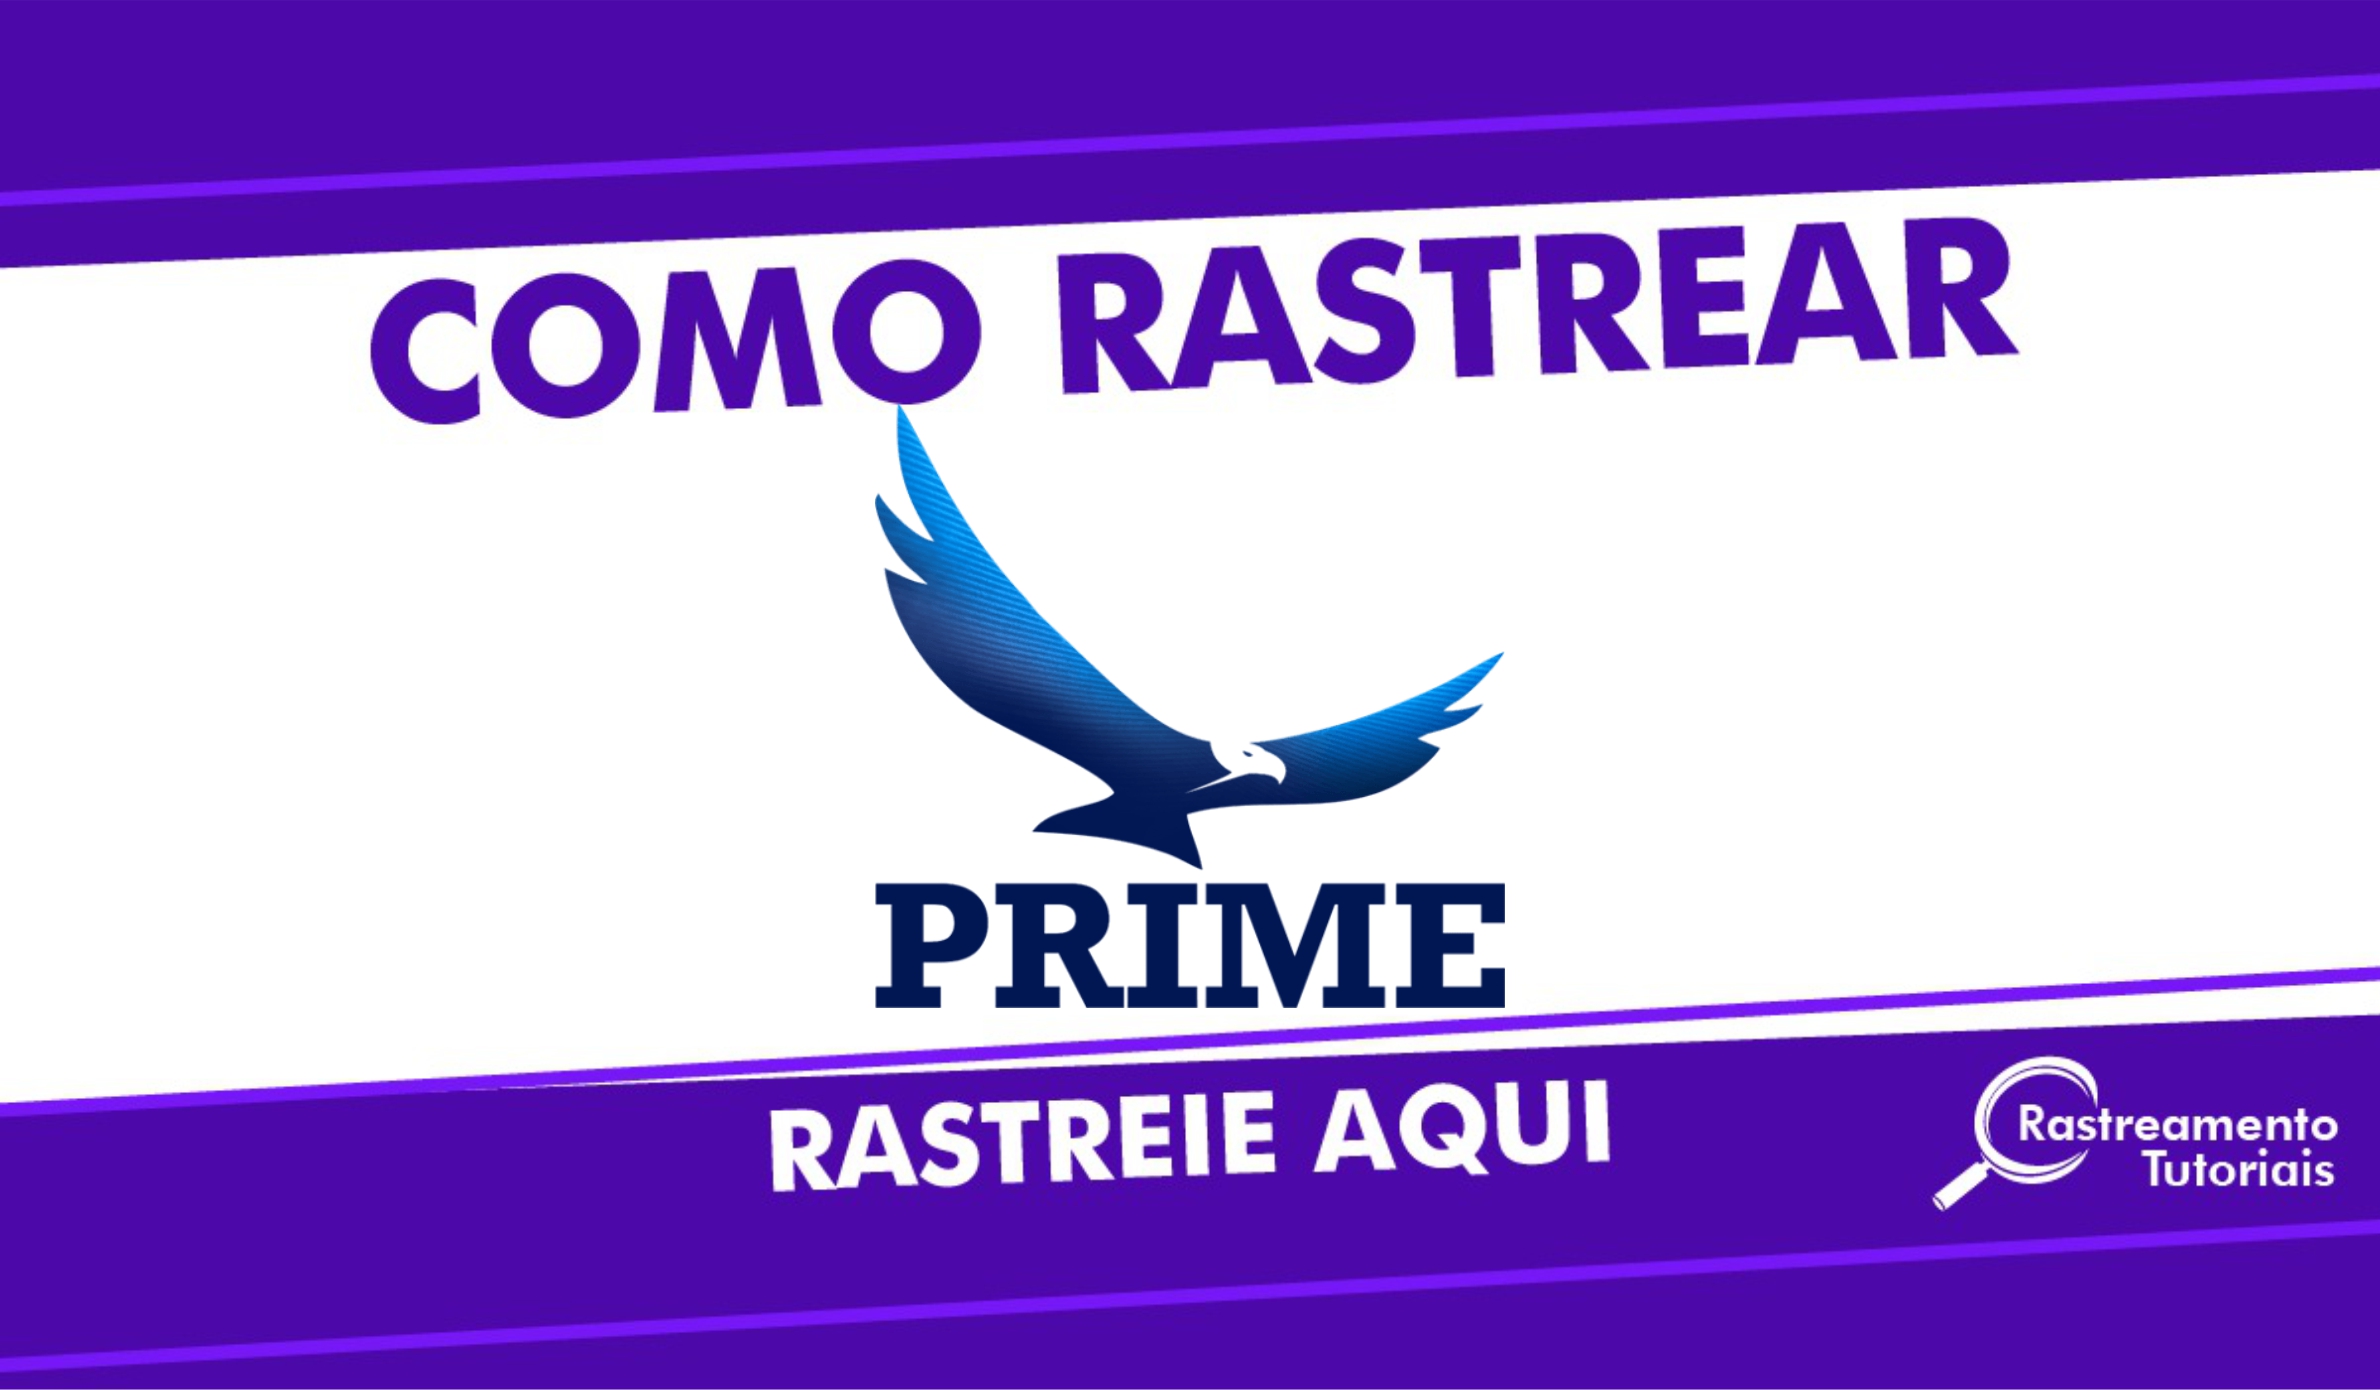 Rastreio Prime Express